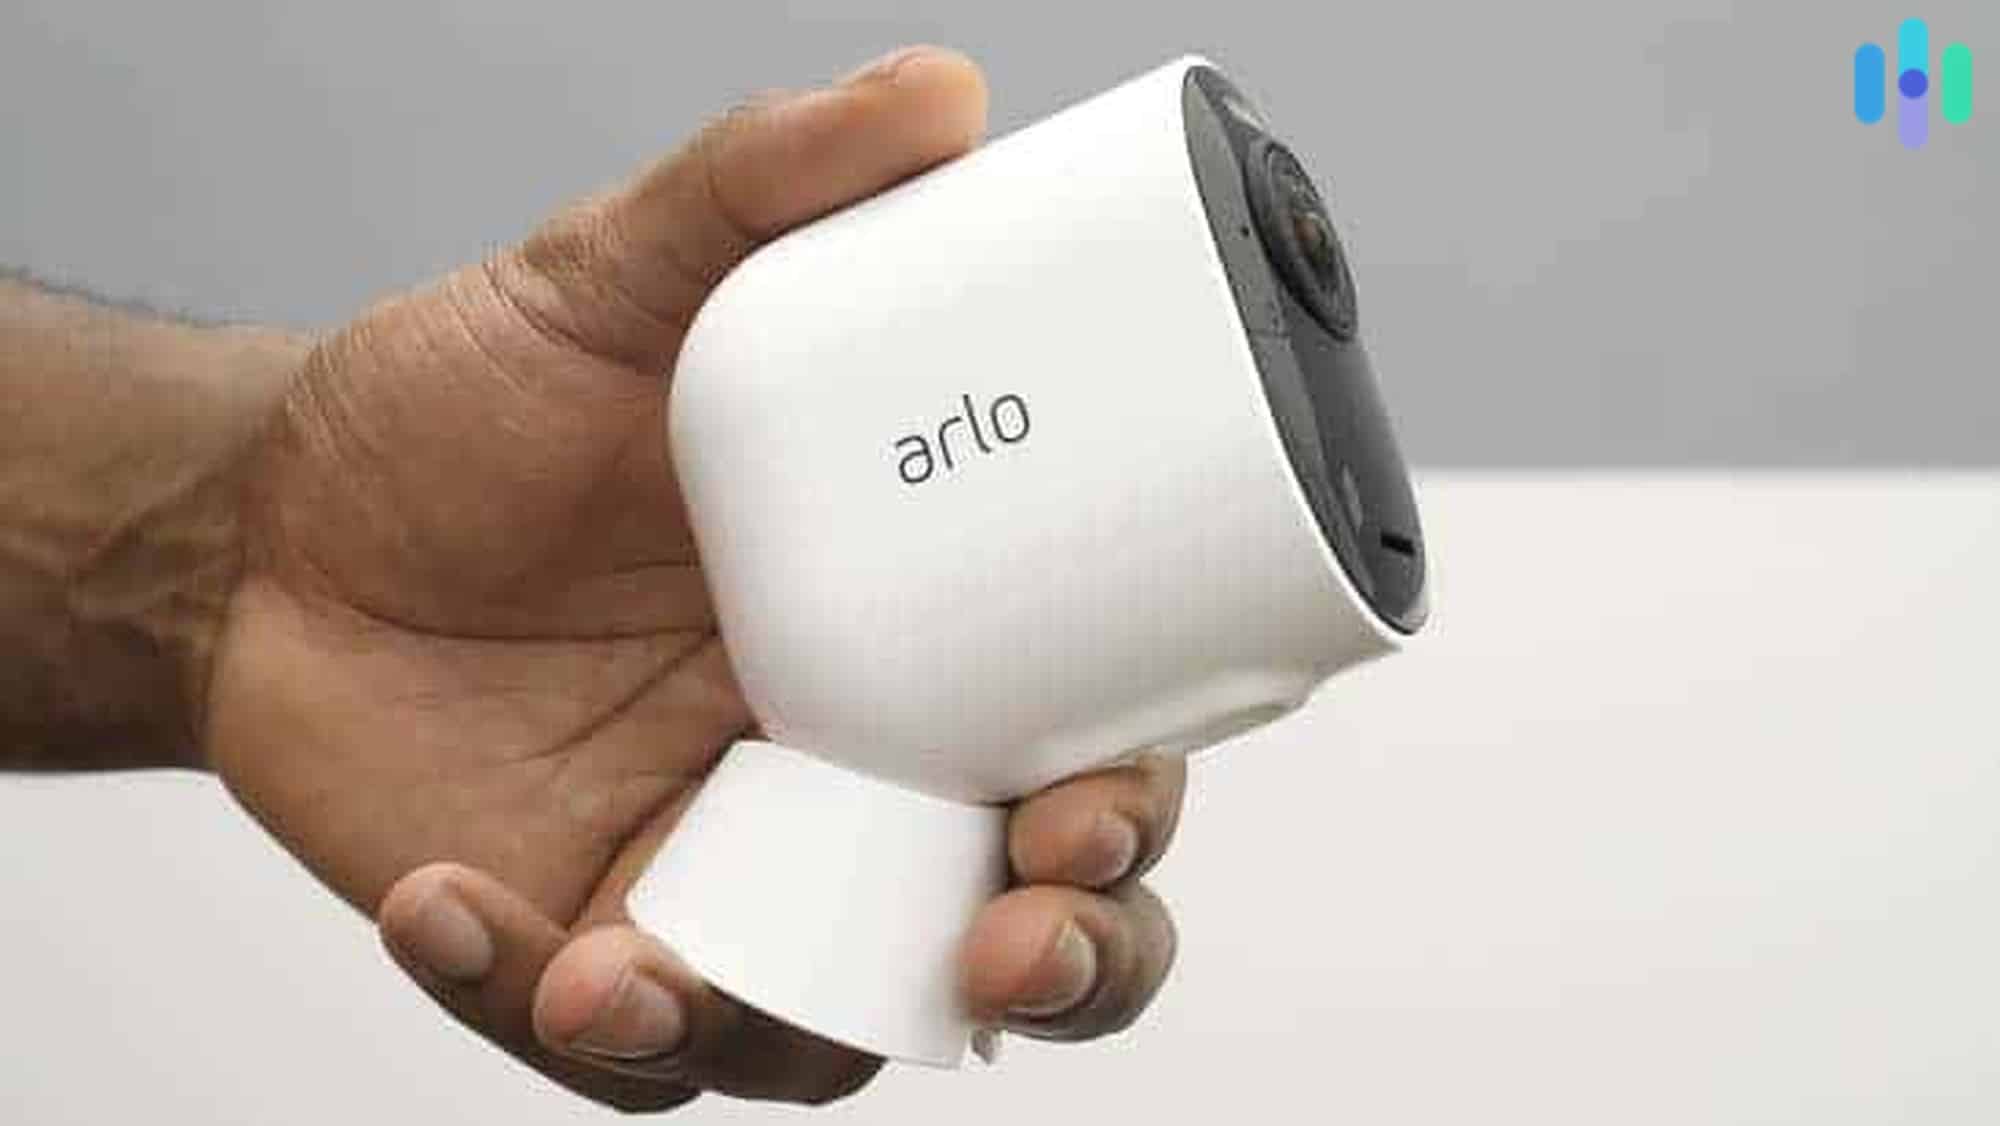 Arlo Security Cameras in Security Cameras 